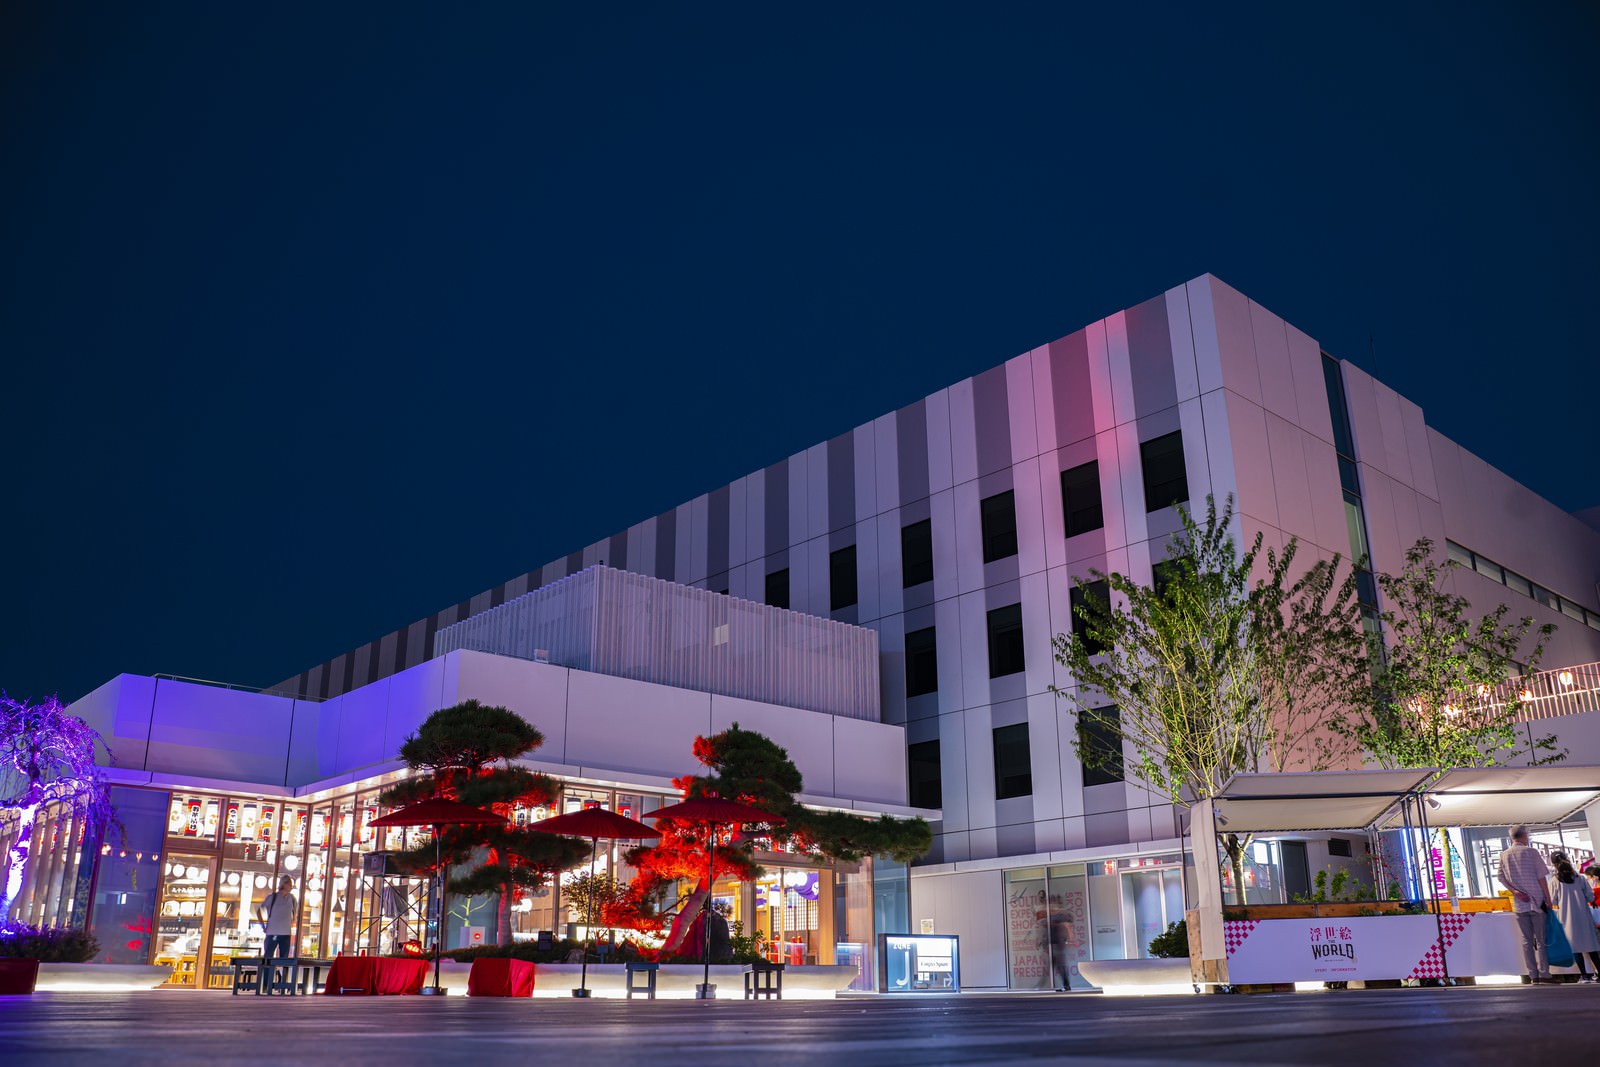 夜の大規模総合施設の外観 羽田イノベーションシティ の写真素材 ぱくたそ